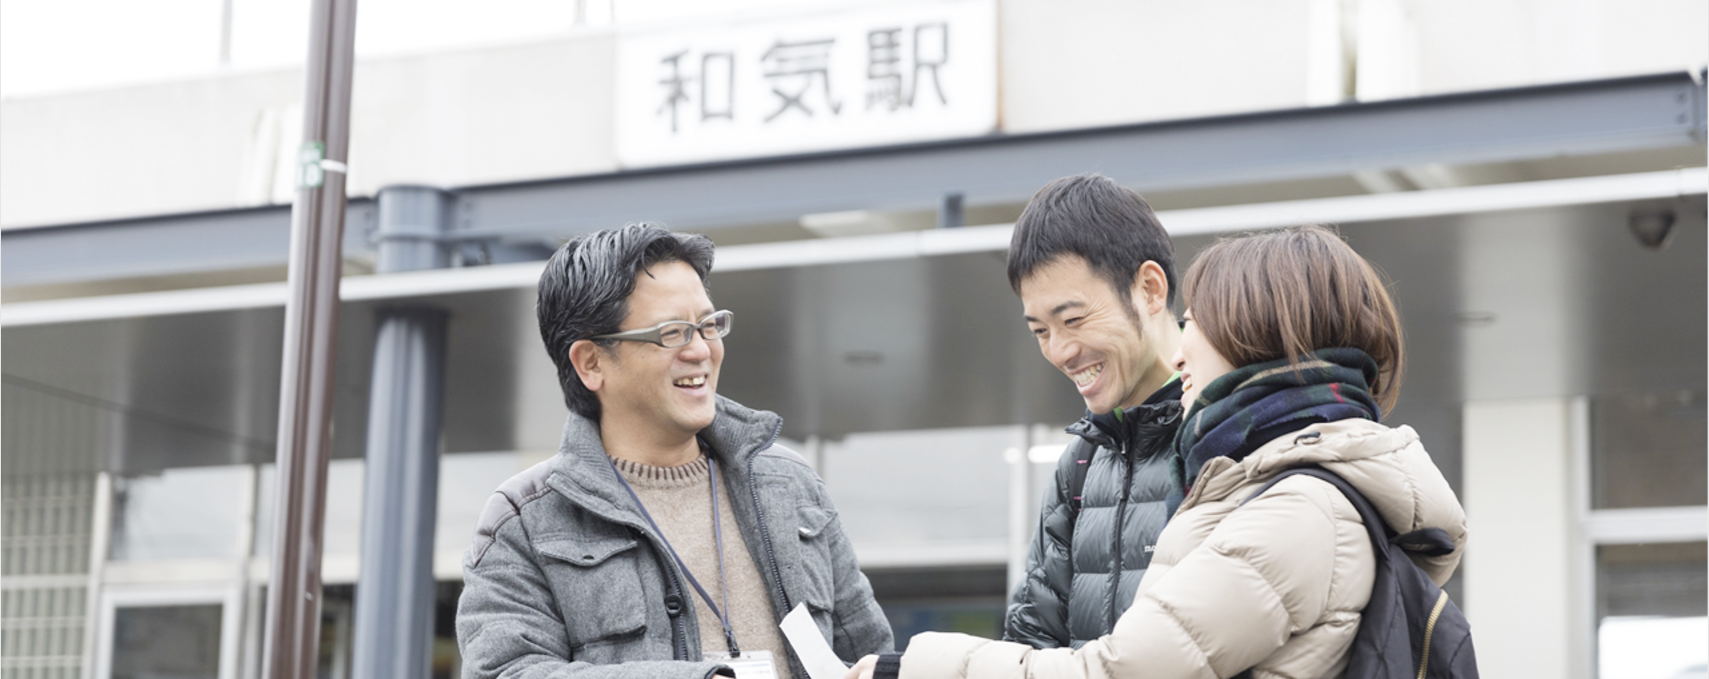 和気駅の駅舎の前で、男性と女性が男性担当者と笑顔で話をしている写真